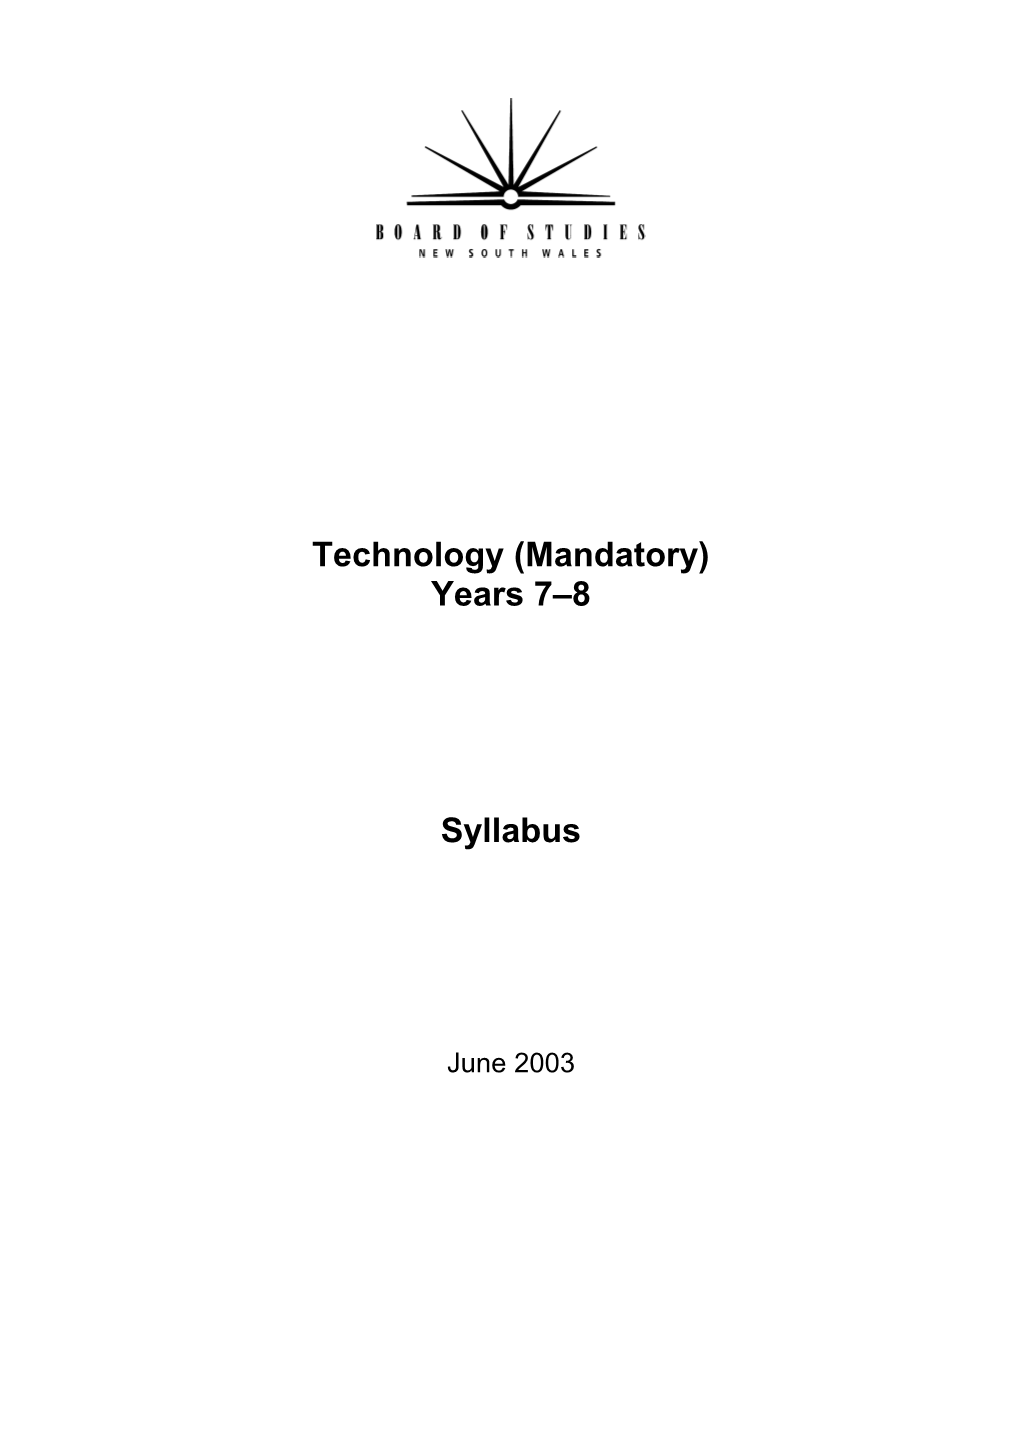 Years 7-10 Syllabus - Technology (Mandatory)